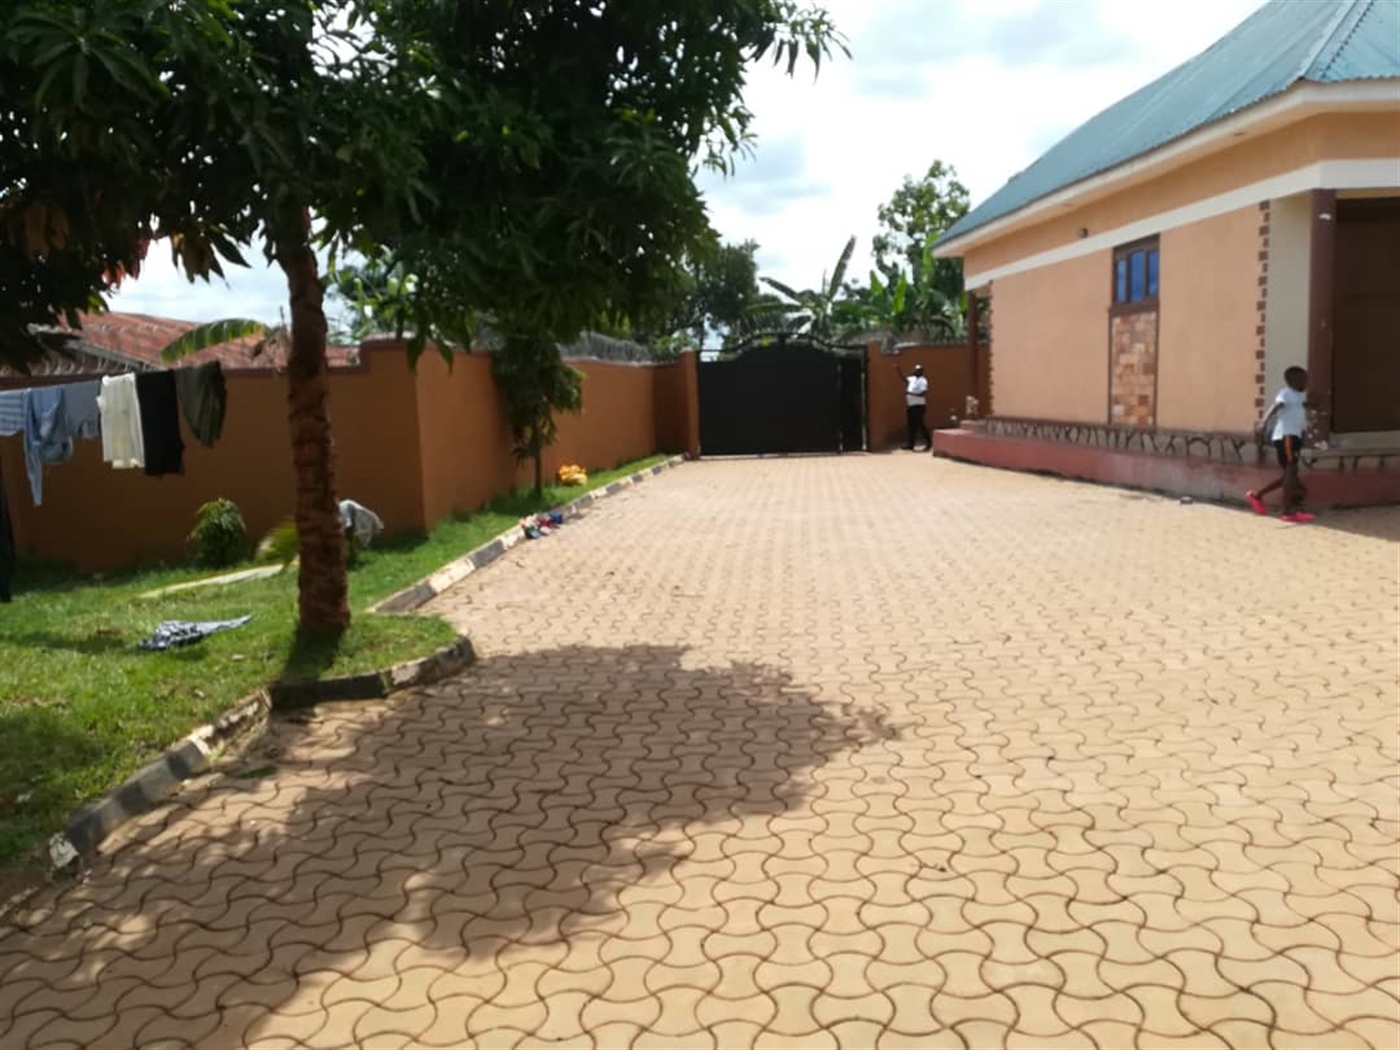 Rental units for rent in Kawuga Mukono